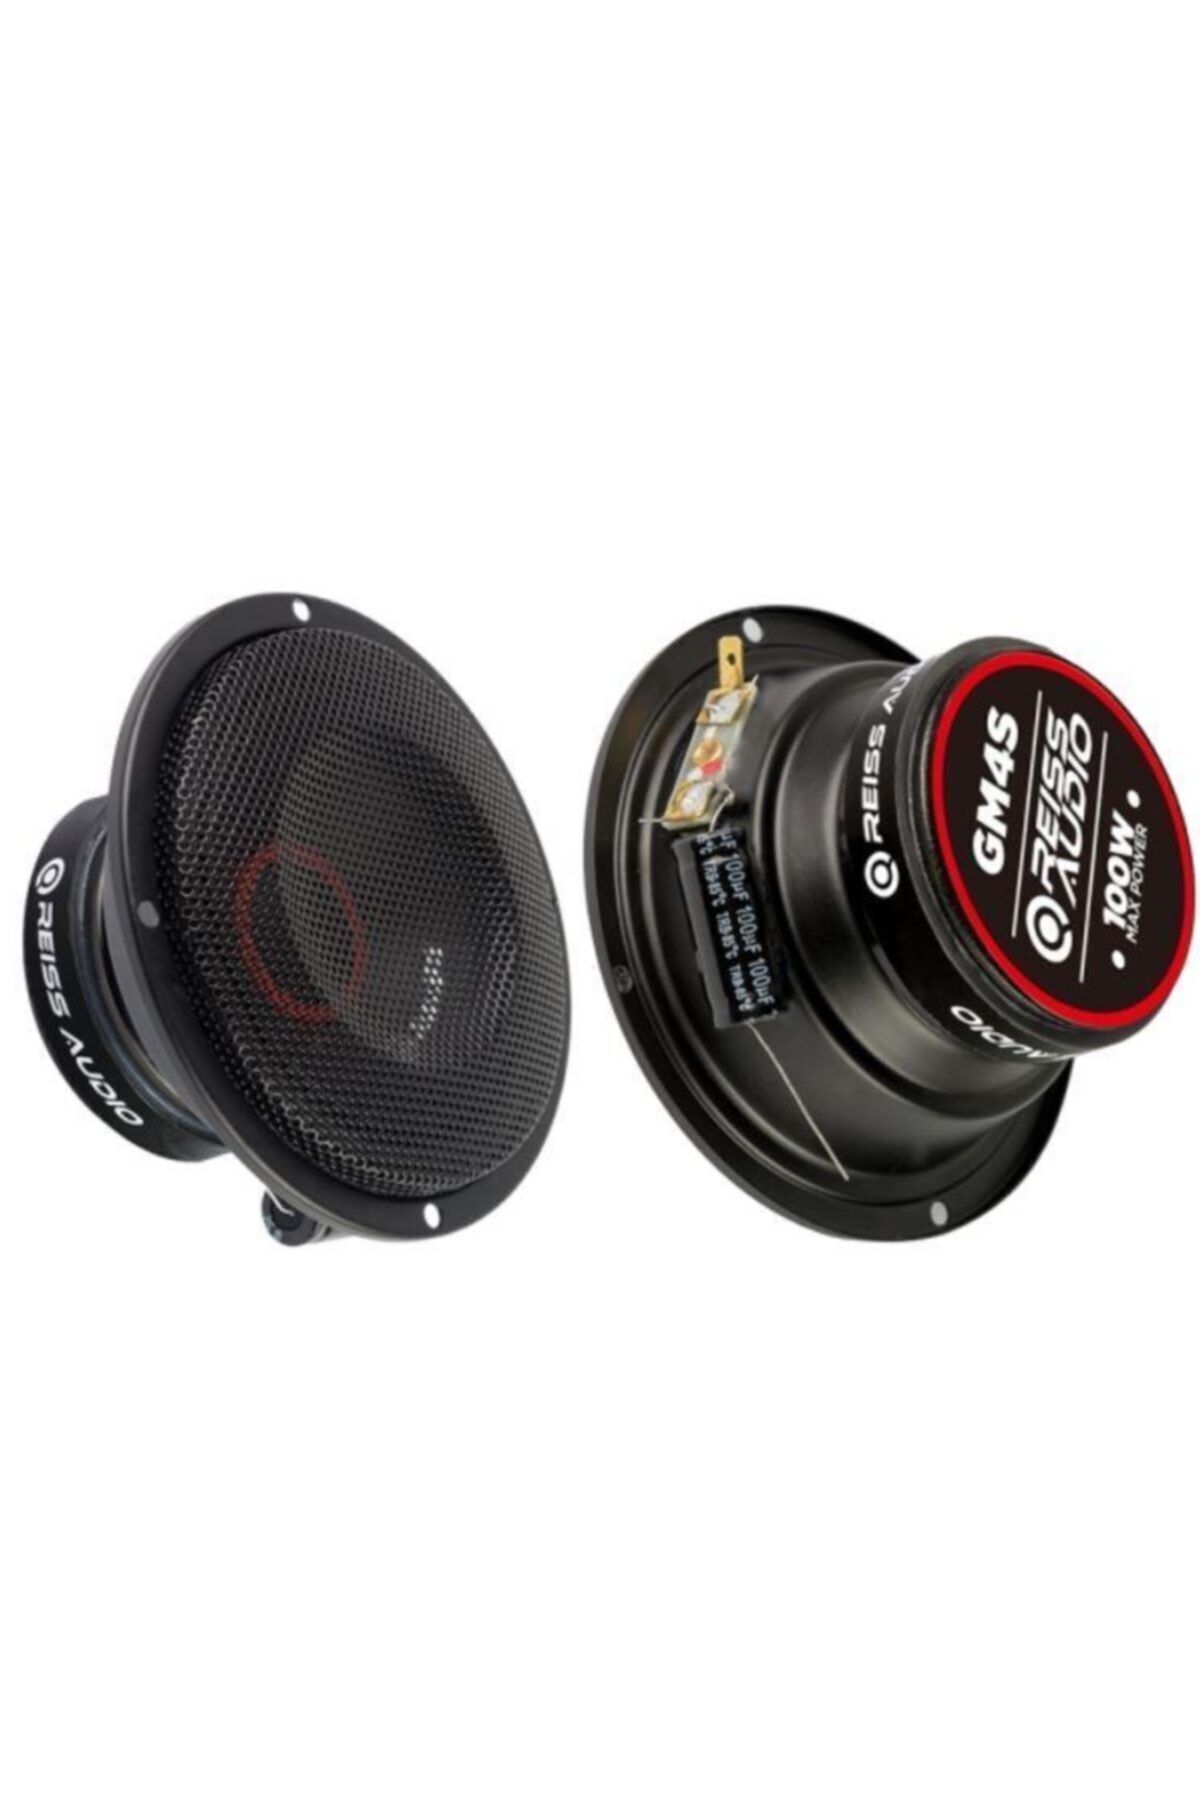 Reiss Oto Hoperlör Audıo Rs-gm4s 10 Cm Mid-range Speaker